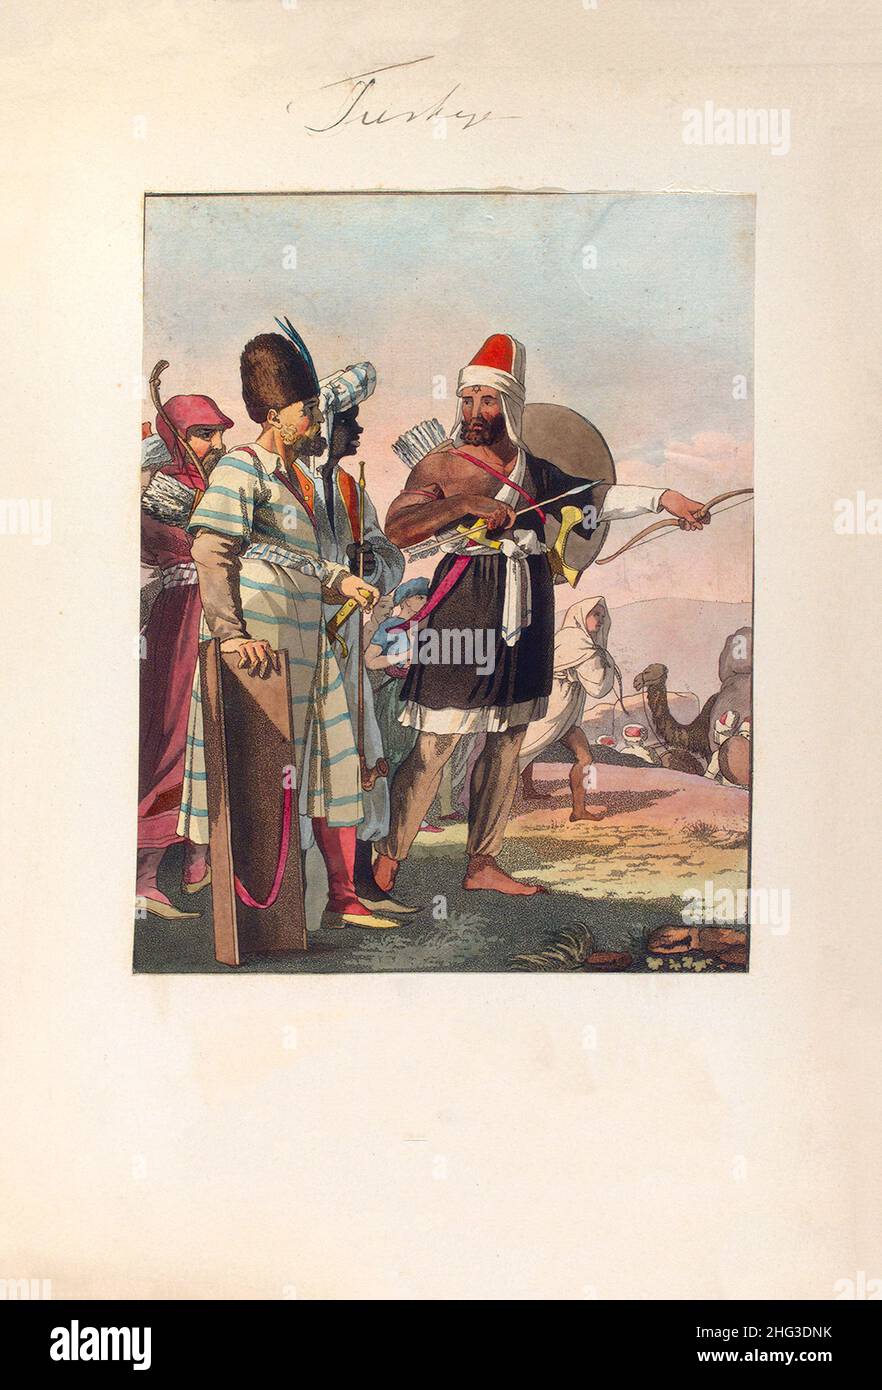 Lithographie des Mamluks arabes (infanterie légère turque asiatique) de l'armée turque du 17th-18th siècle.1910 Mamluk (traduit en 'un qui est propriétaire', méli Banque D'Images